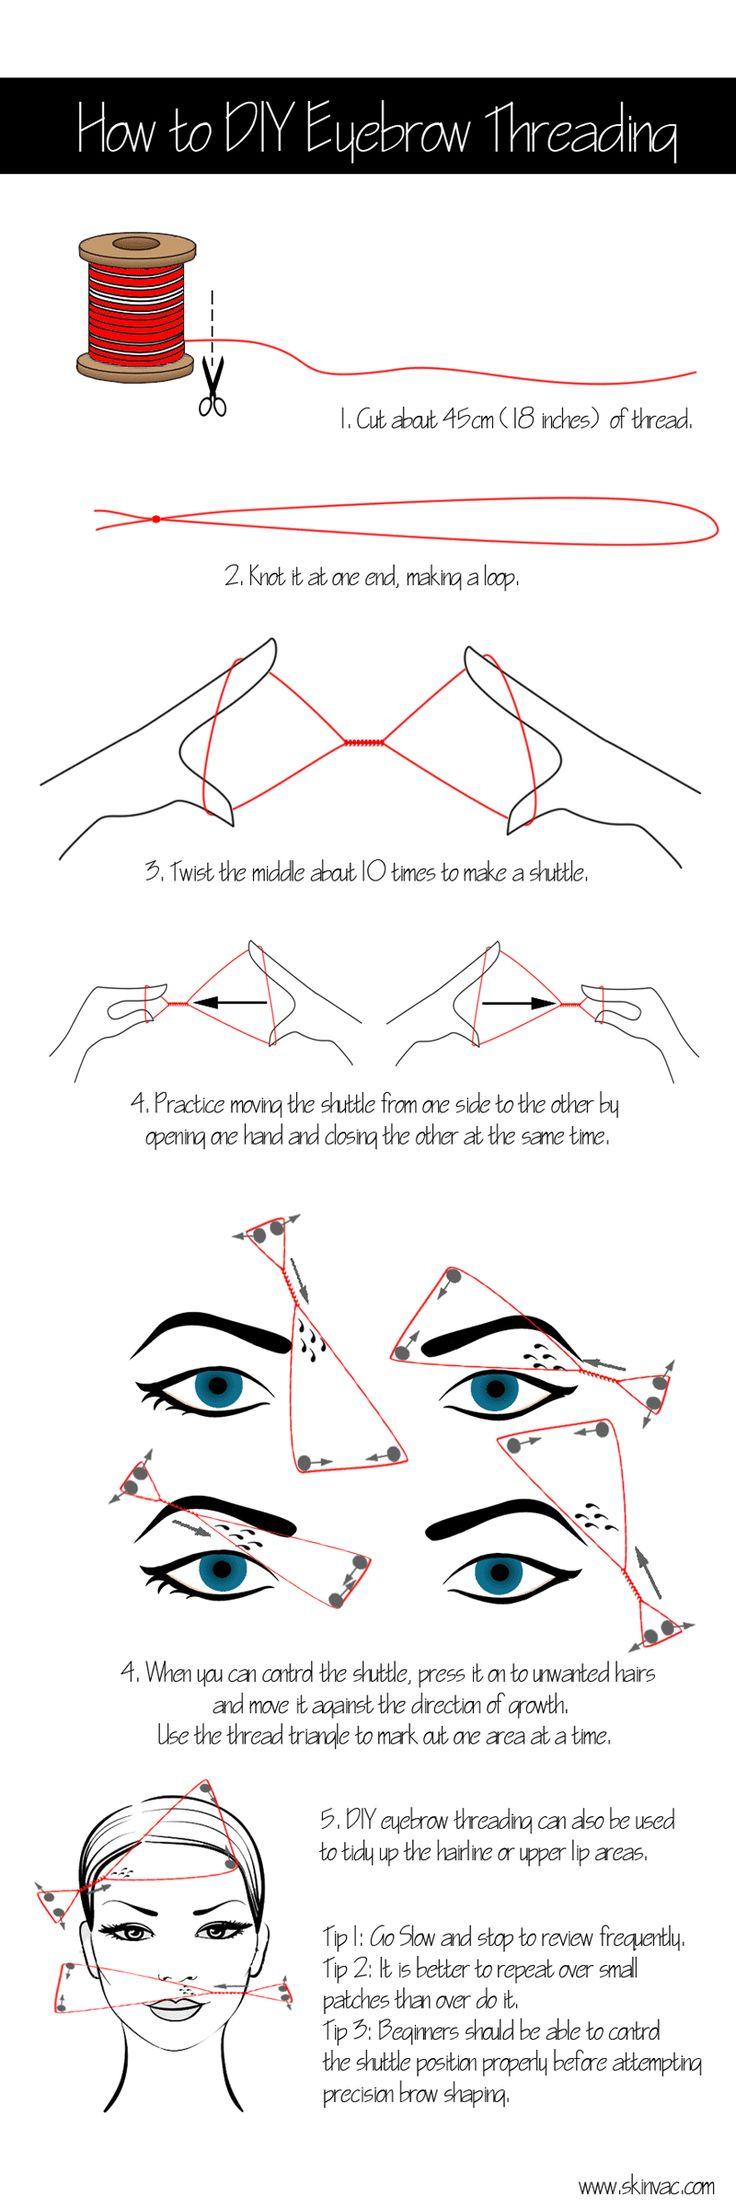 زفاف - How To Do Eyebrow Threading At Home – DIY With Detailed Steps And Images